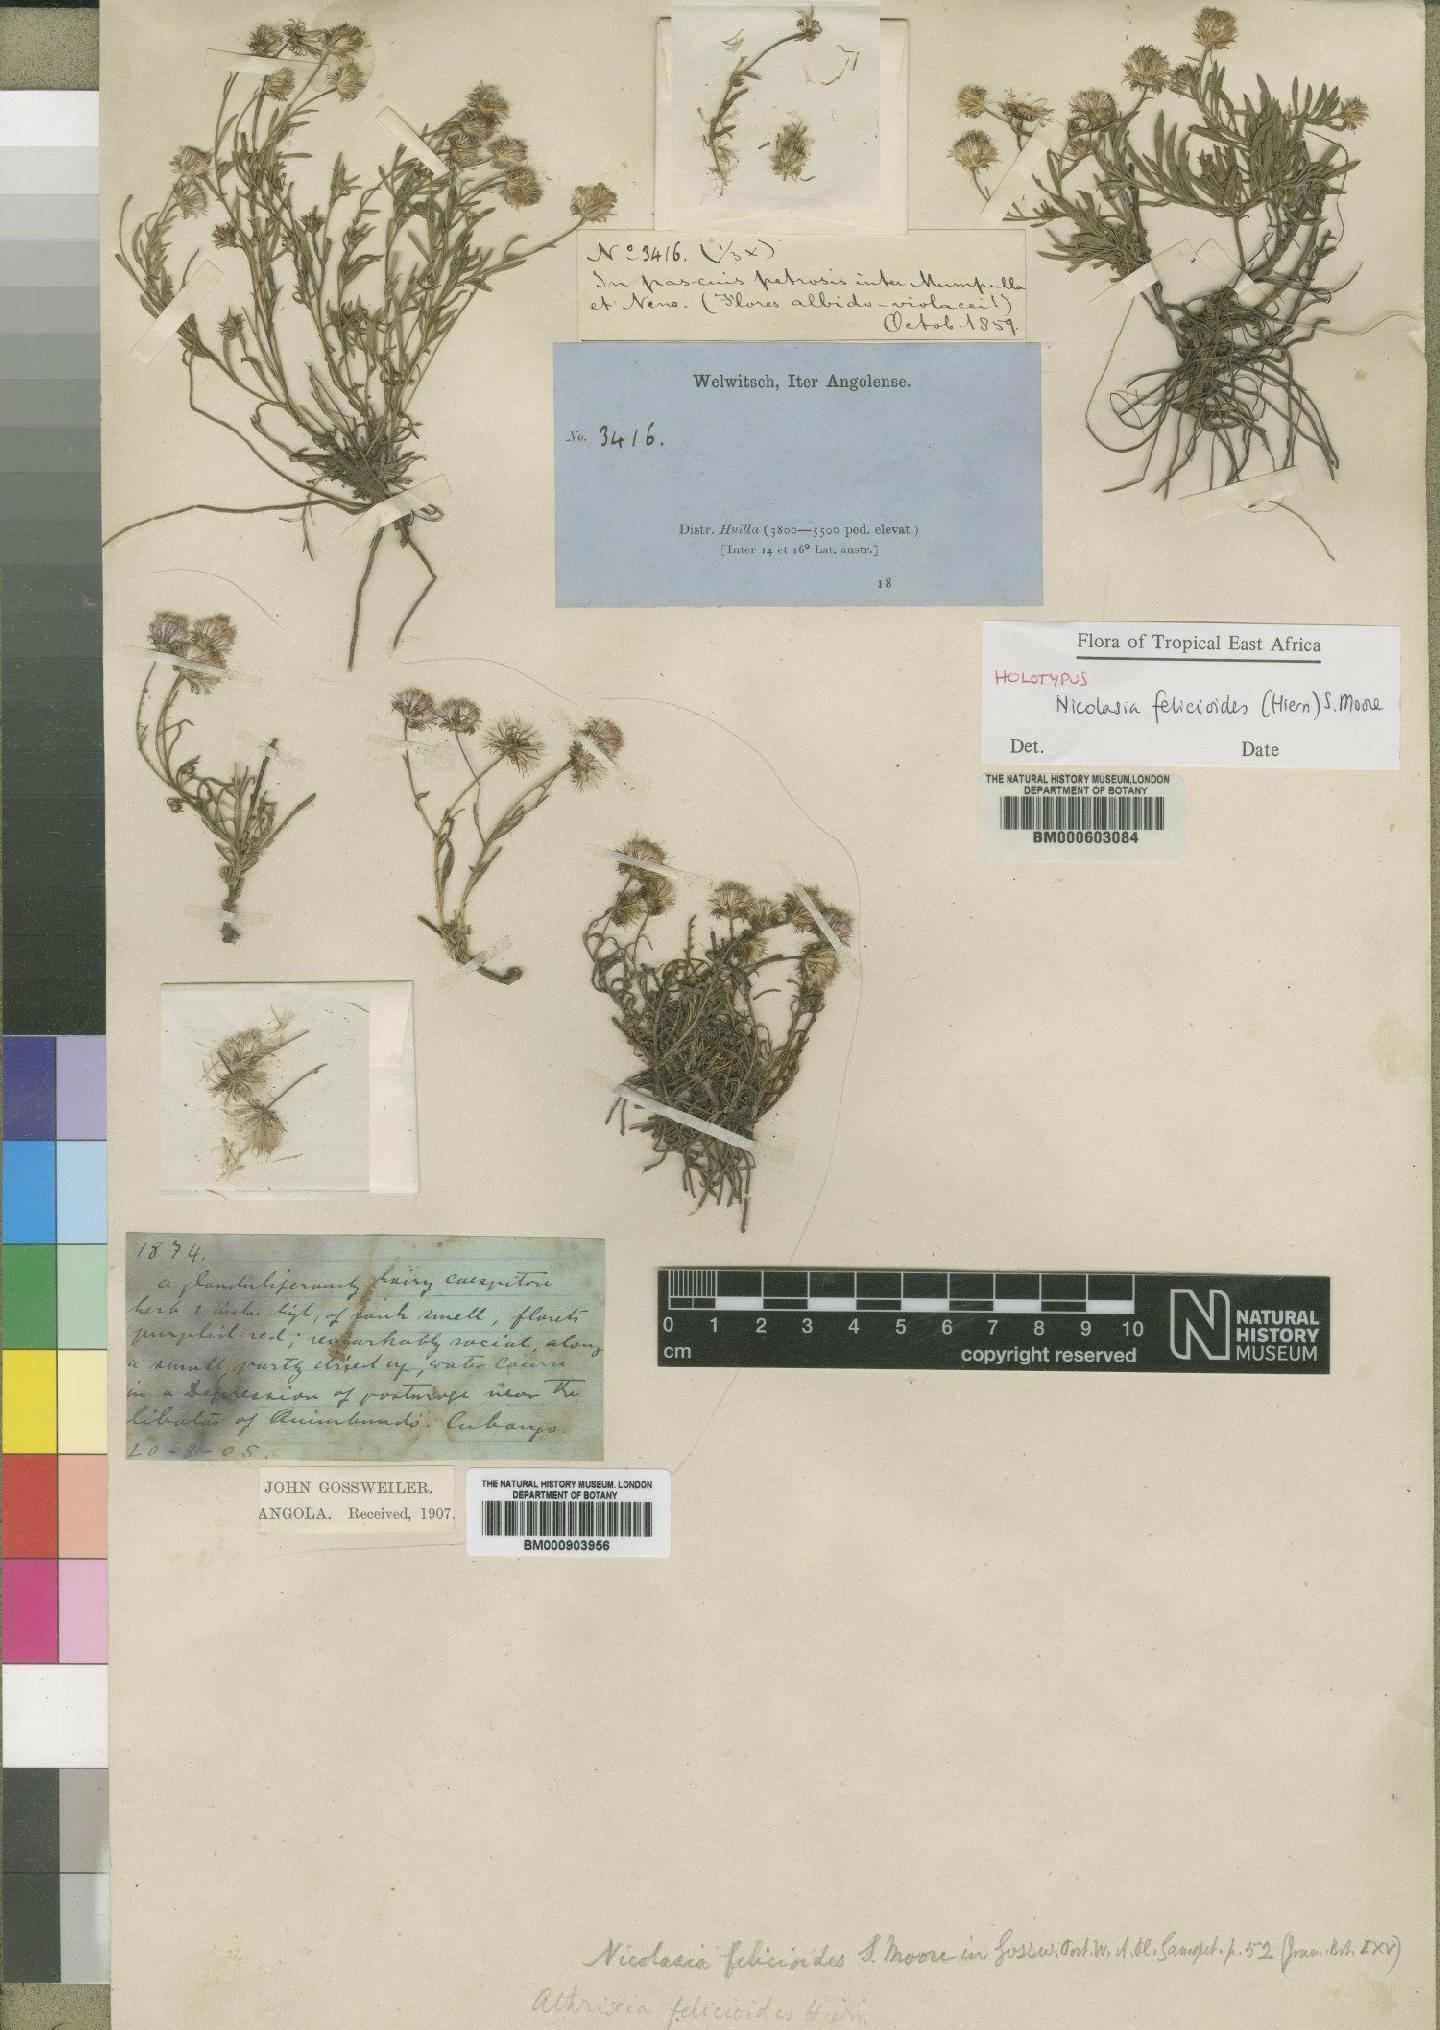 To NHMUK collection (Nicolasia felicioides (Hiern) Moore; Holotype; NHMUK:ecatalogue:4528666)